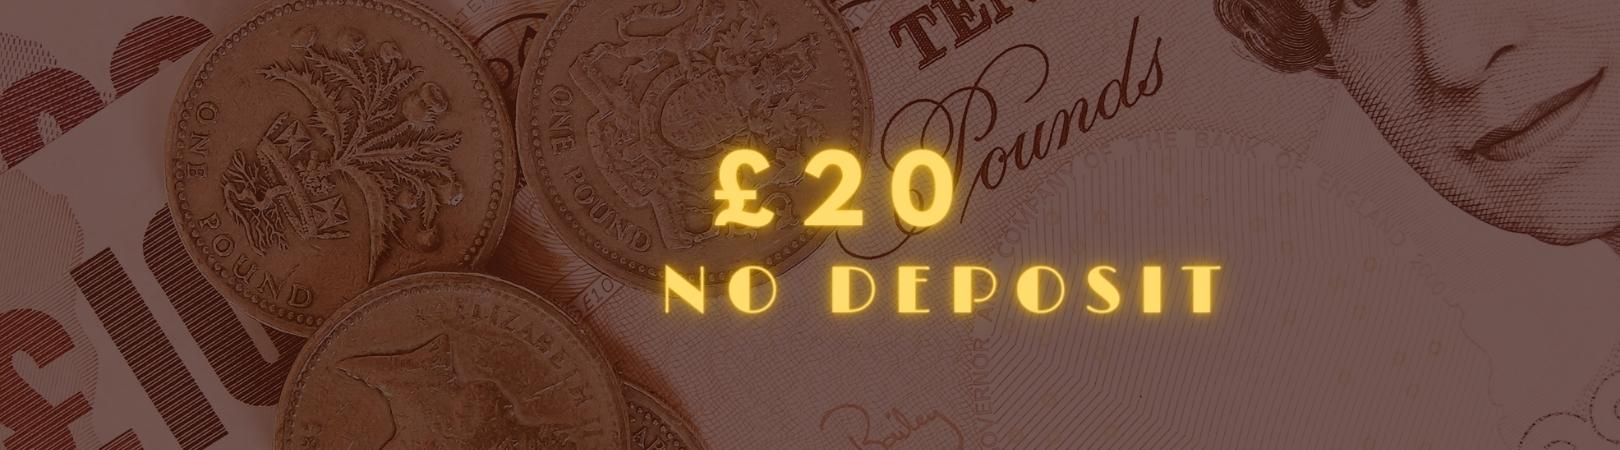 £20 no deposit img